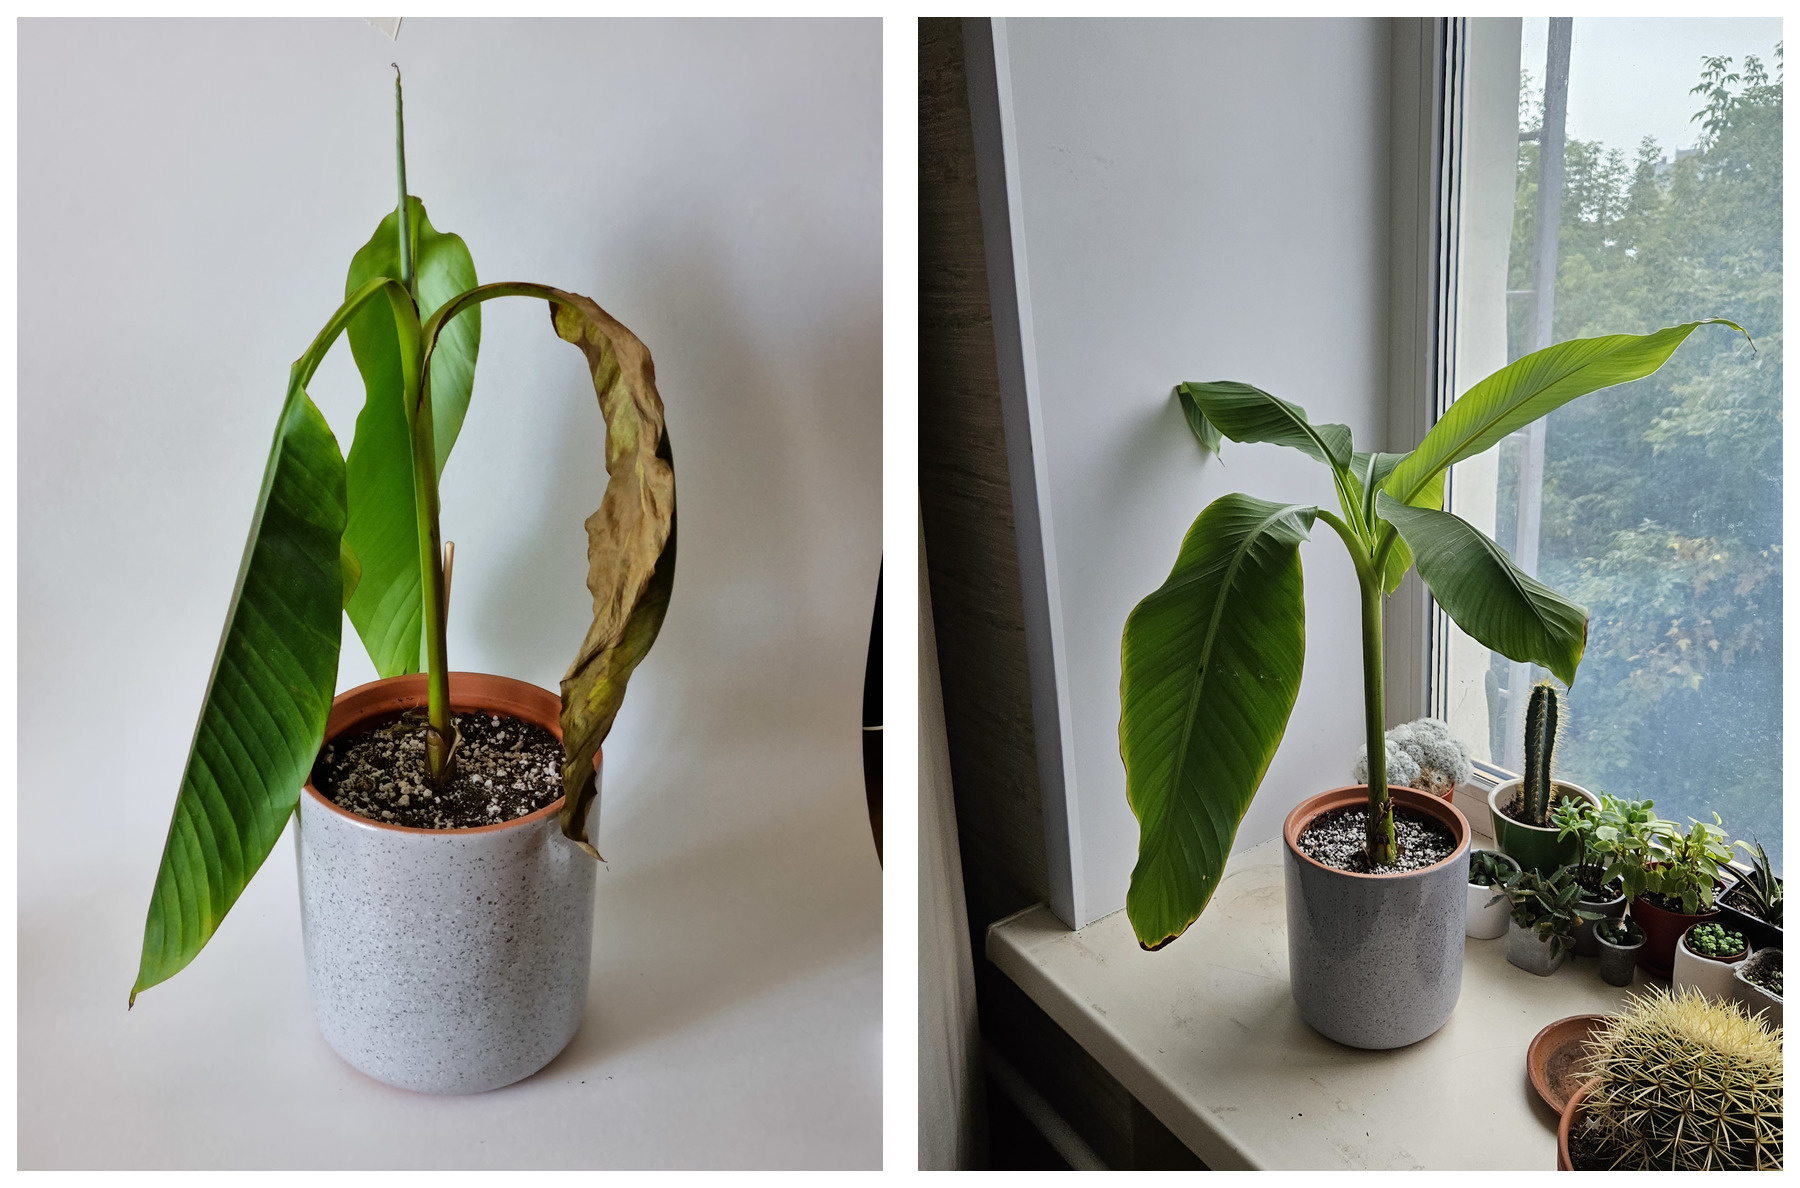 Банан — любимое растение Александра. Фото слева — банан в день покупки, фото справа — банан после того, как Александр приложил к нему руку